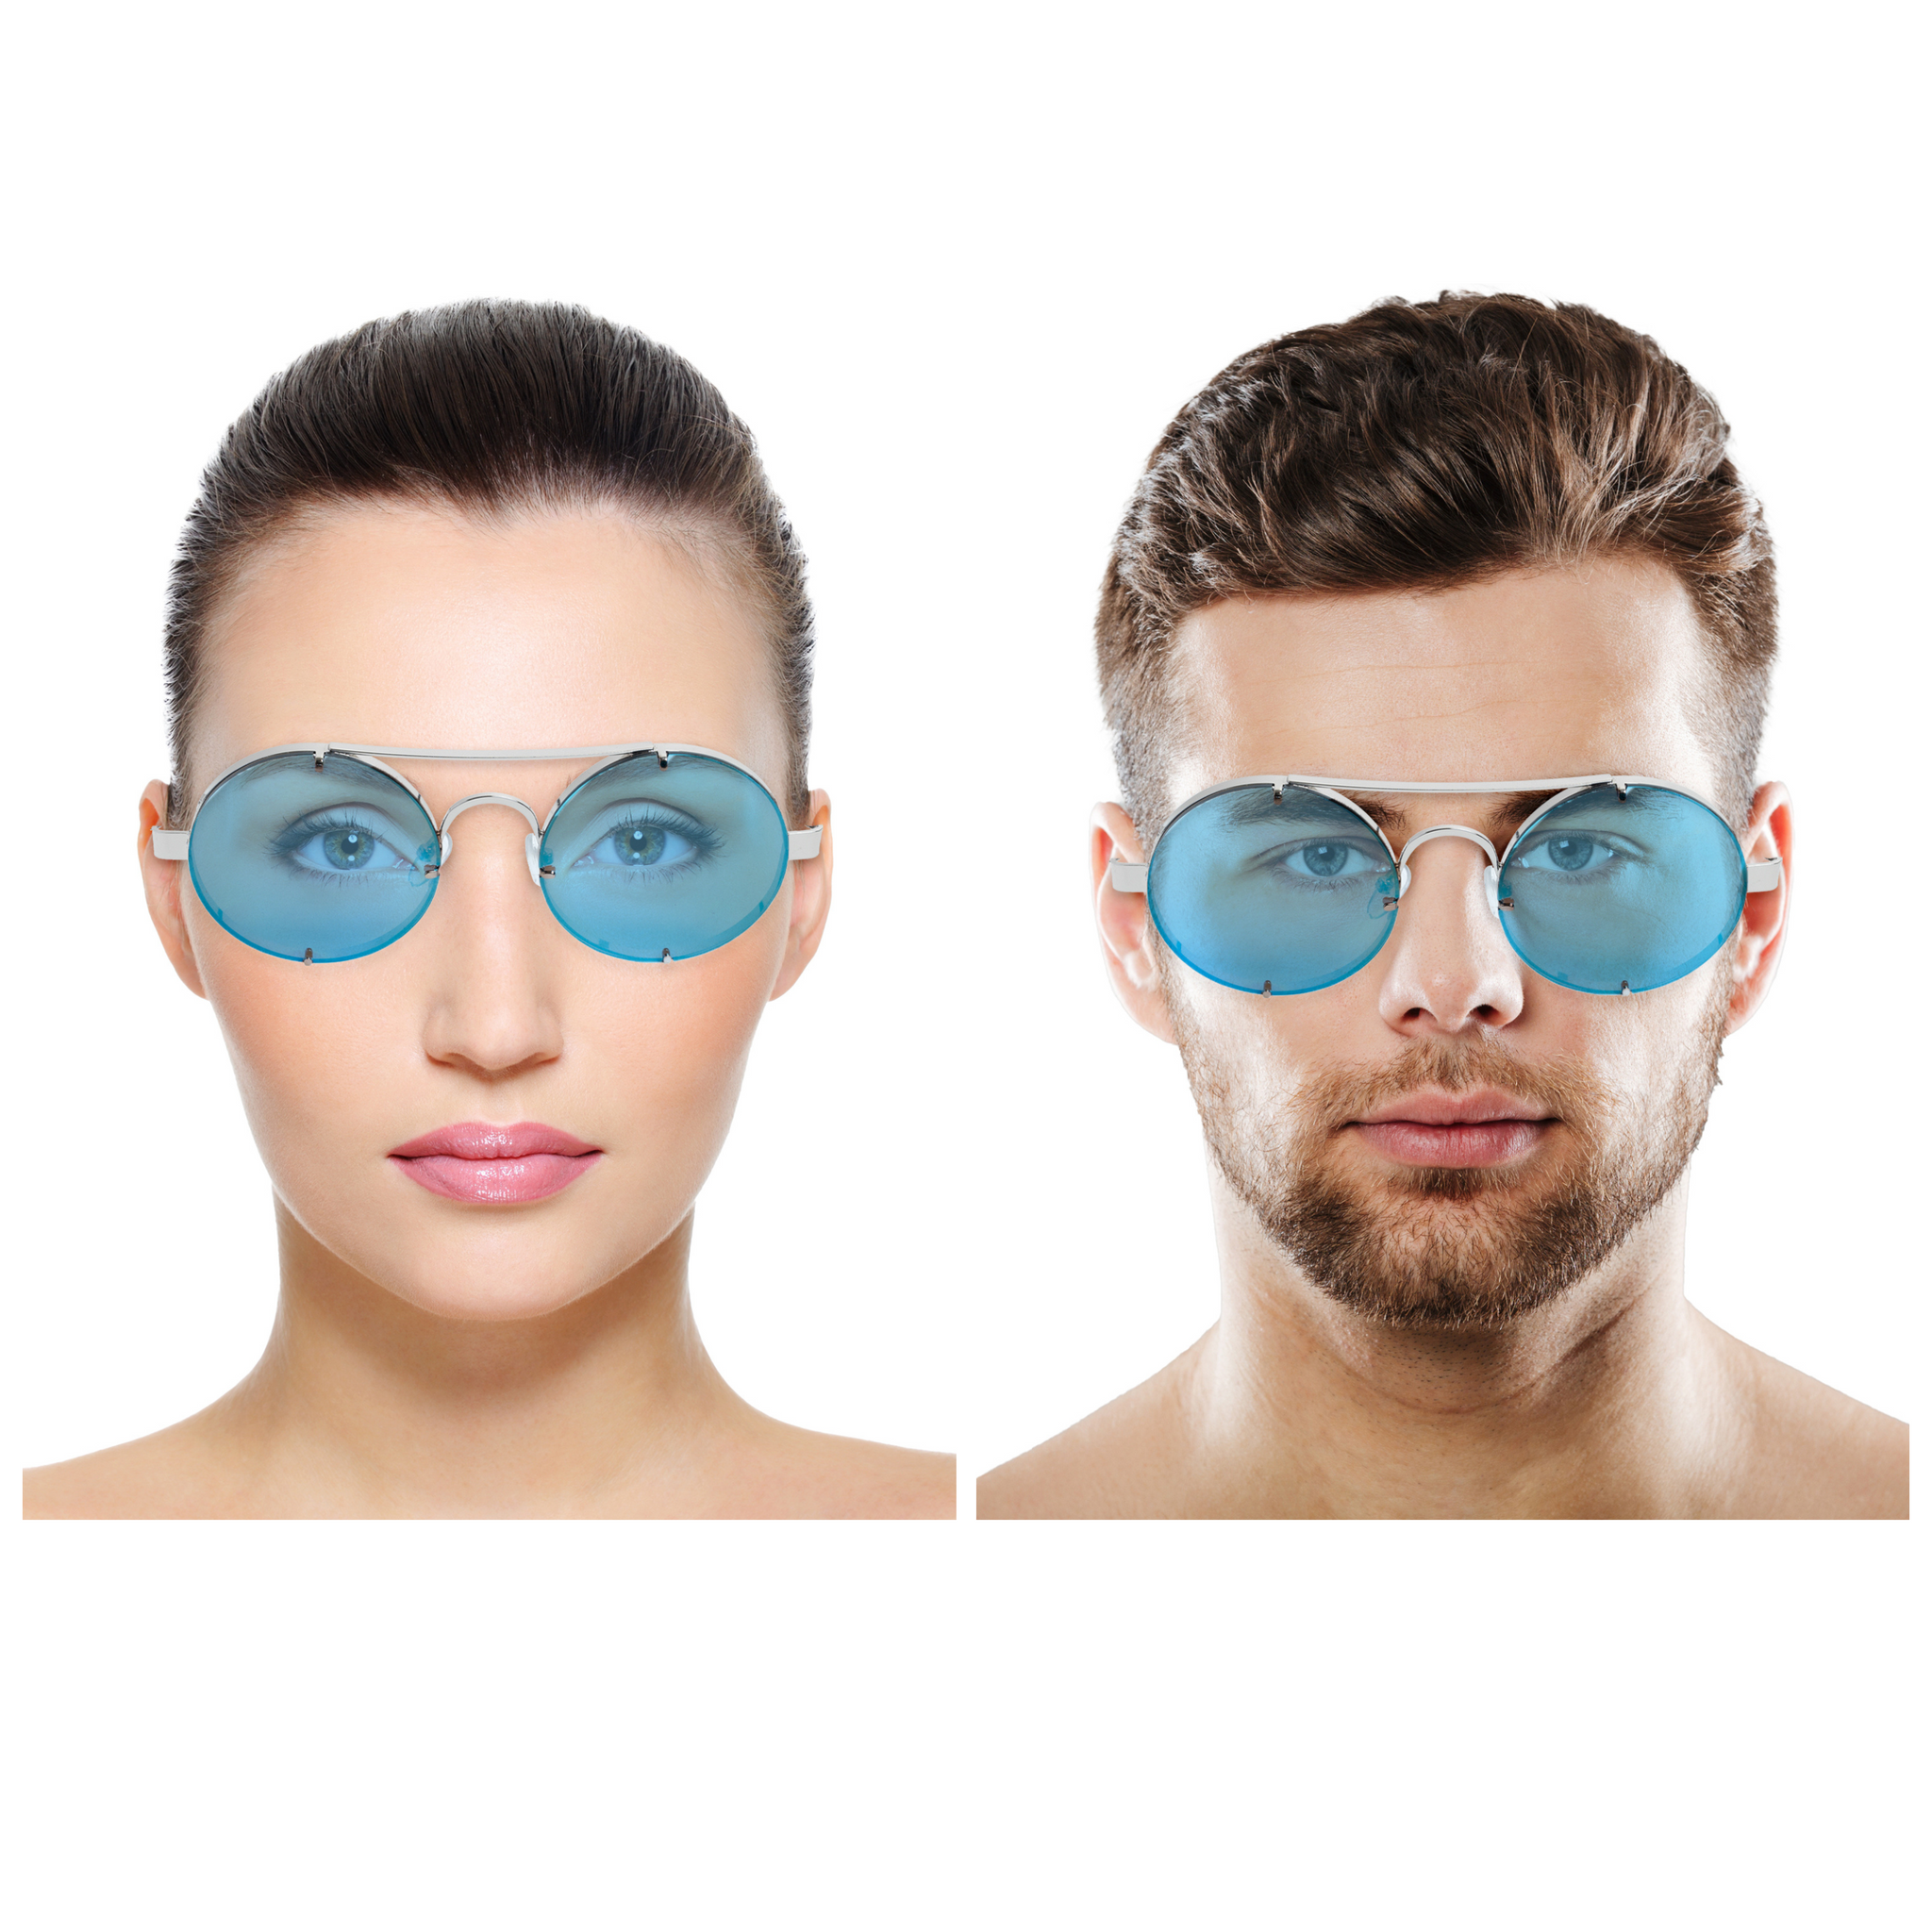 Chokore Retro Polarized Sunglasses (Blue & Silver)